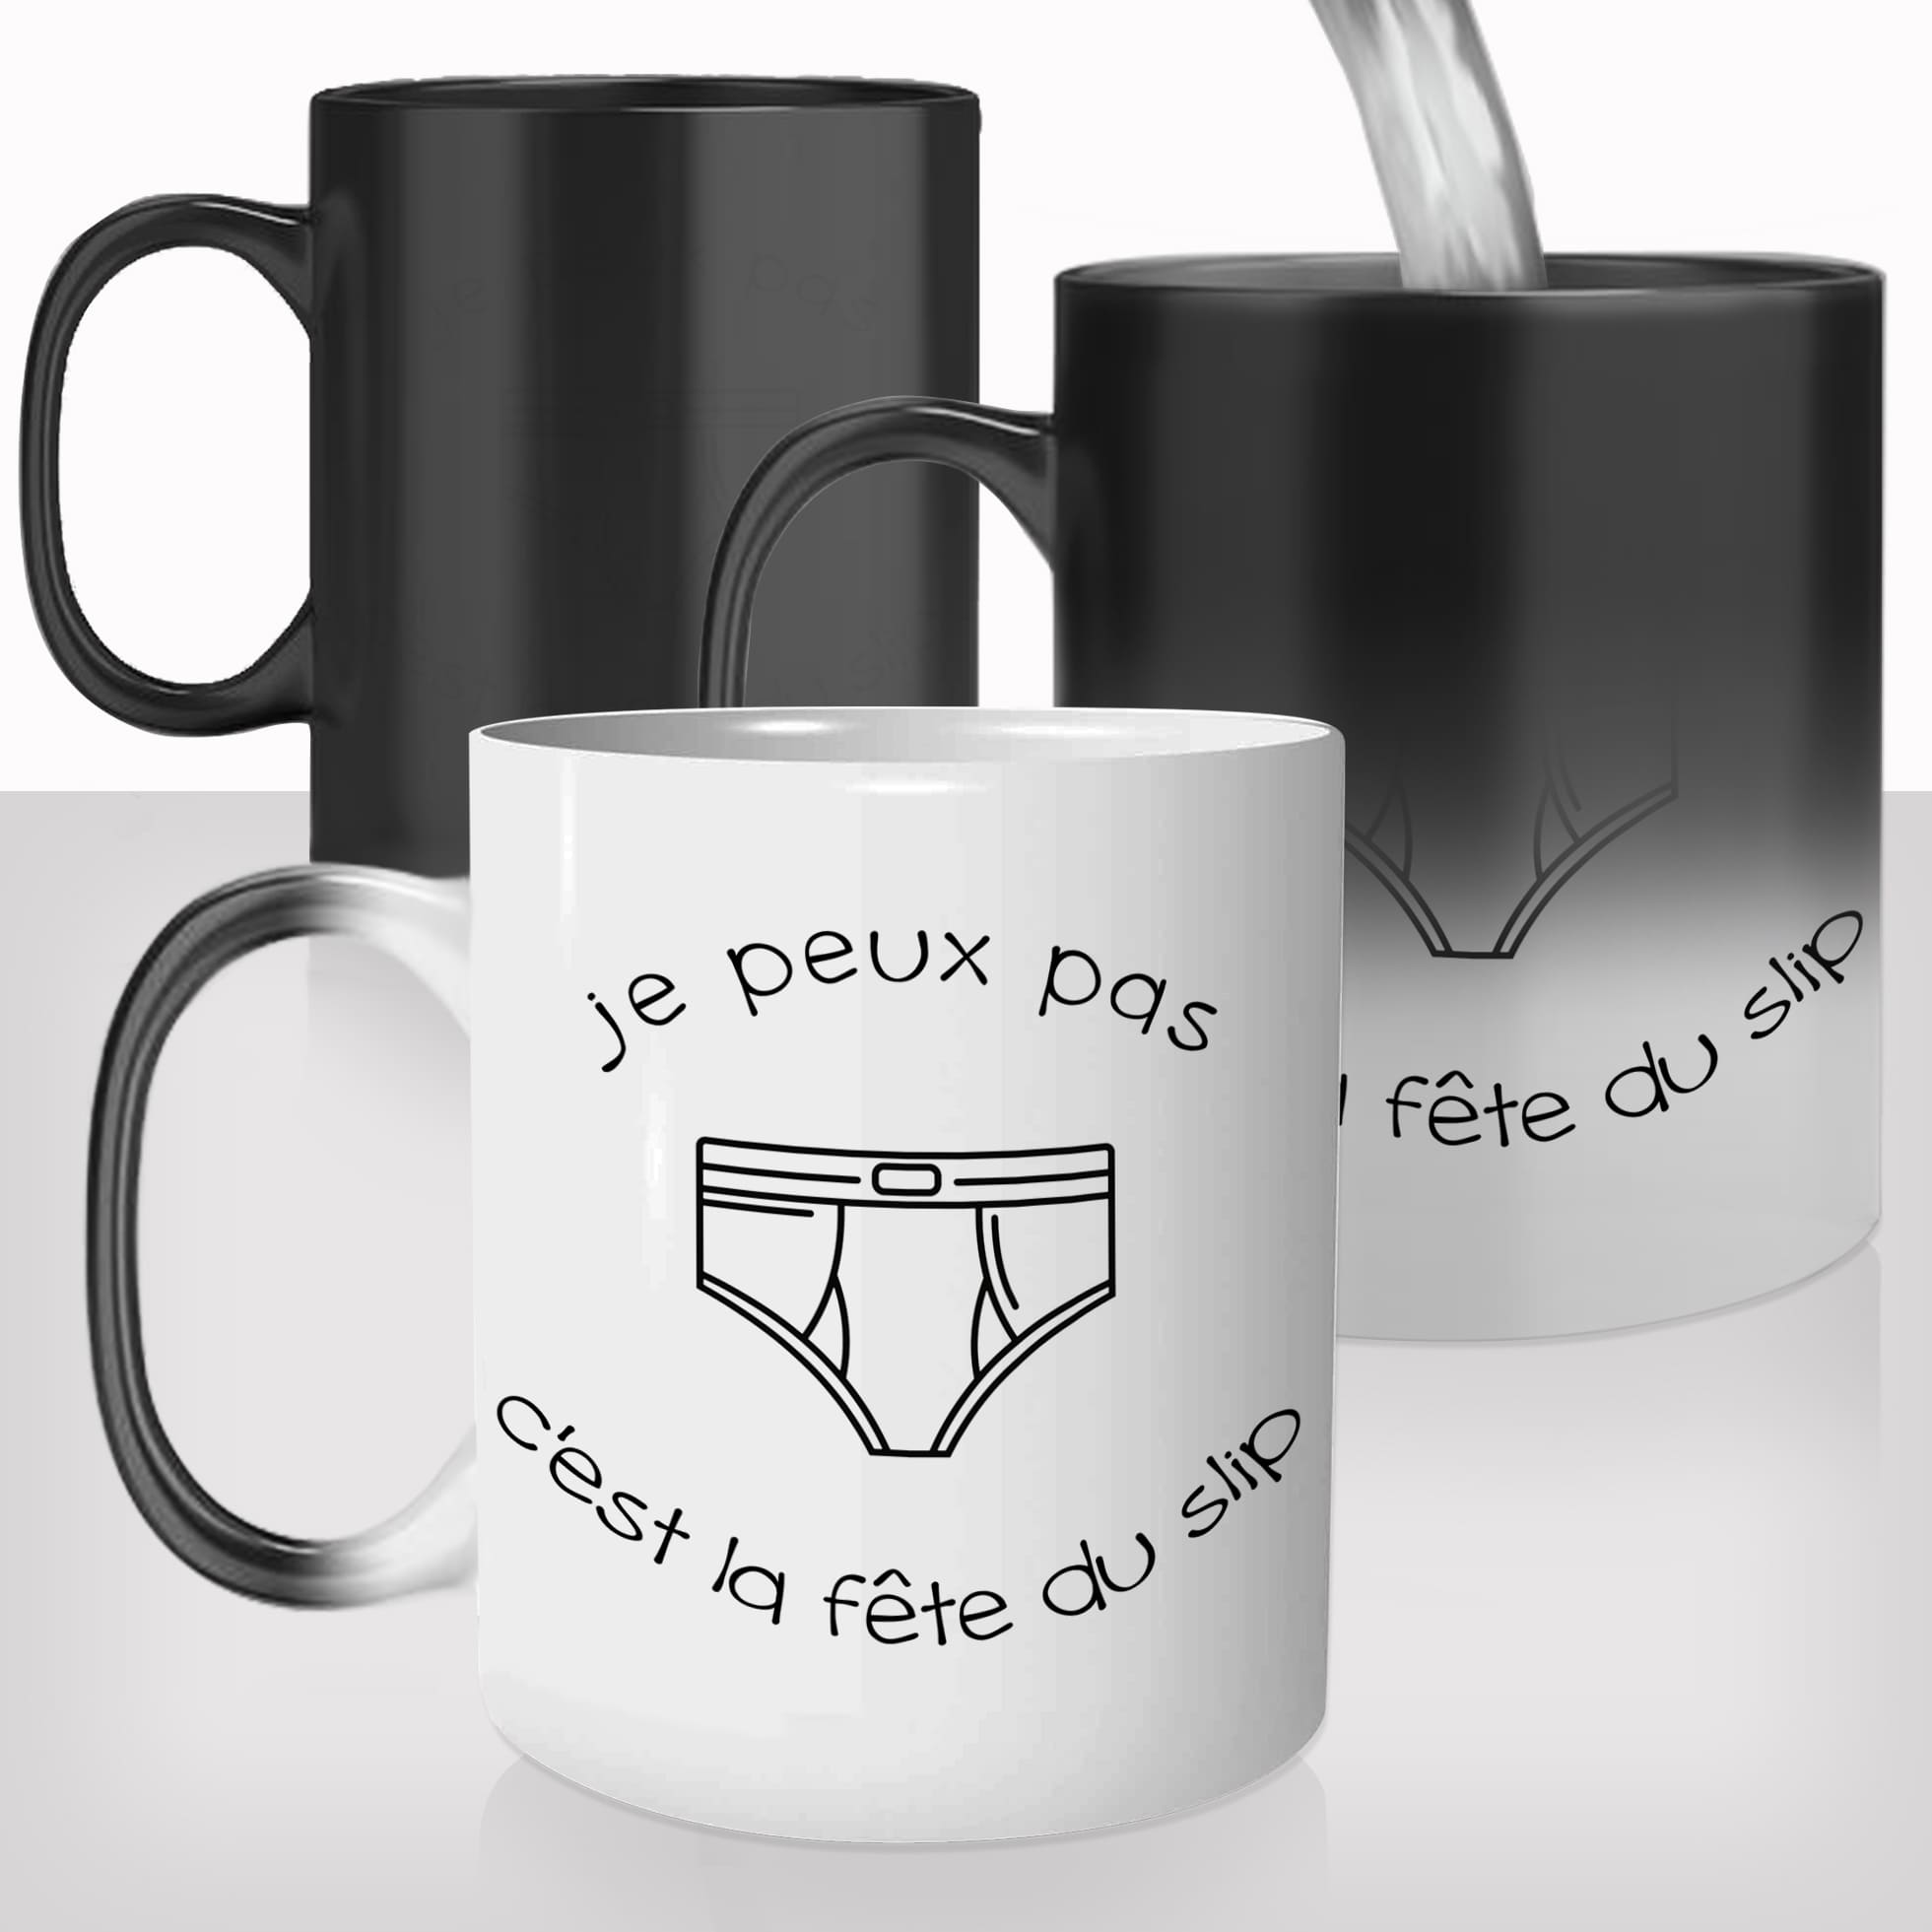 mug-magique-personnalisable-thermoreactif-thermique-tasse-je-peux-pas-fête-du-slip-drole-homme-personnalisé-fun-idée-cadeau-original